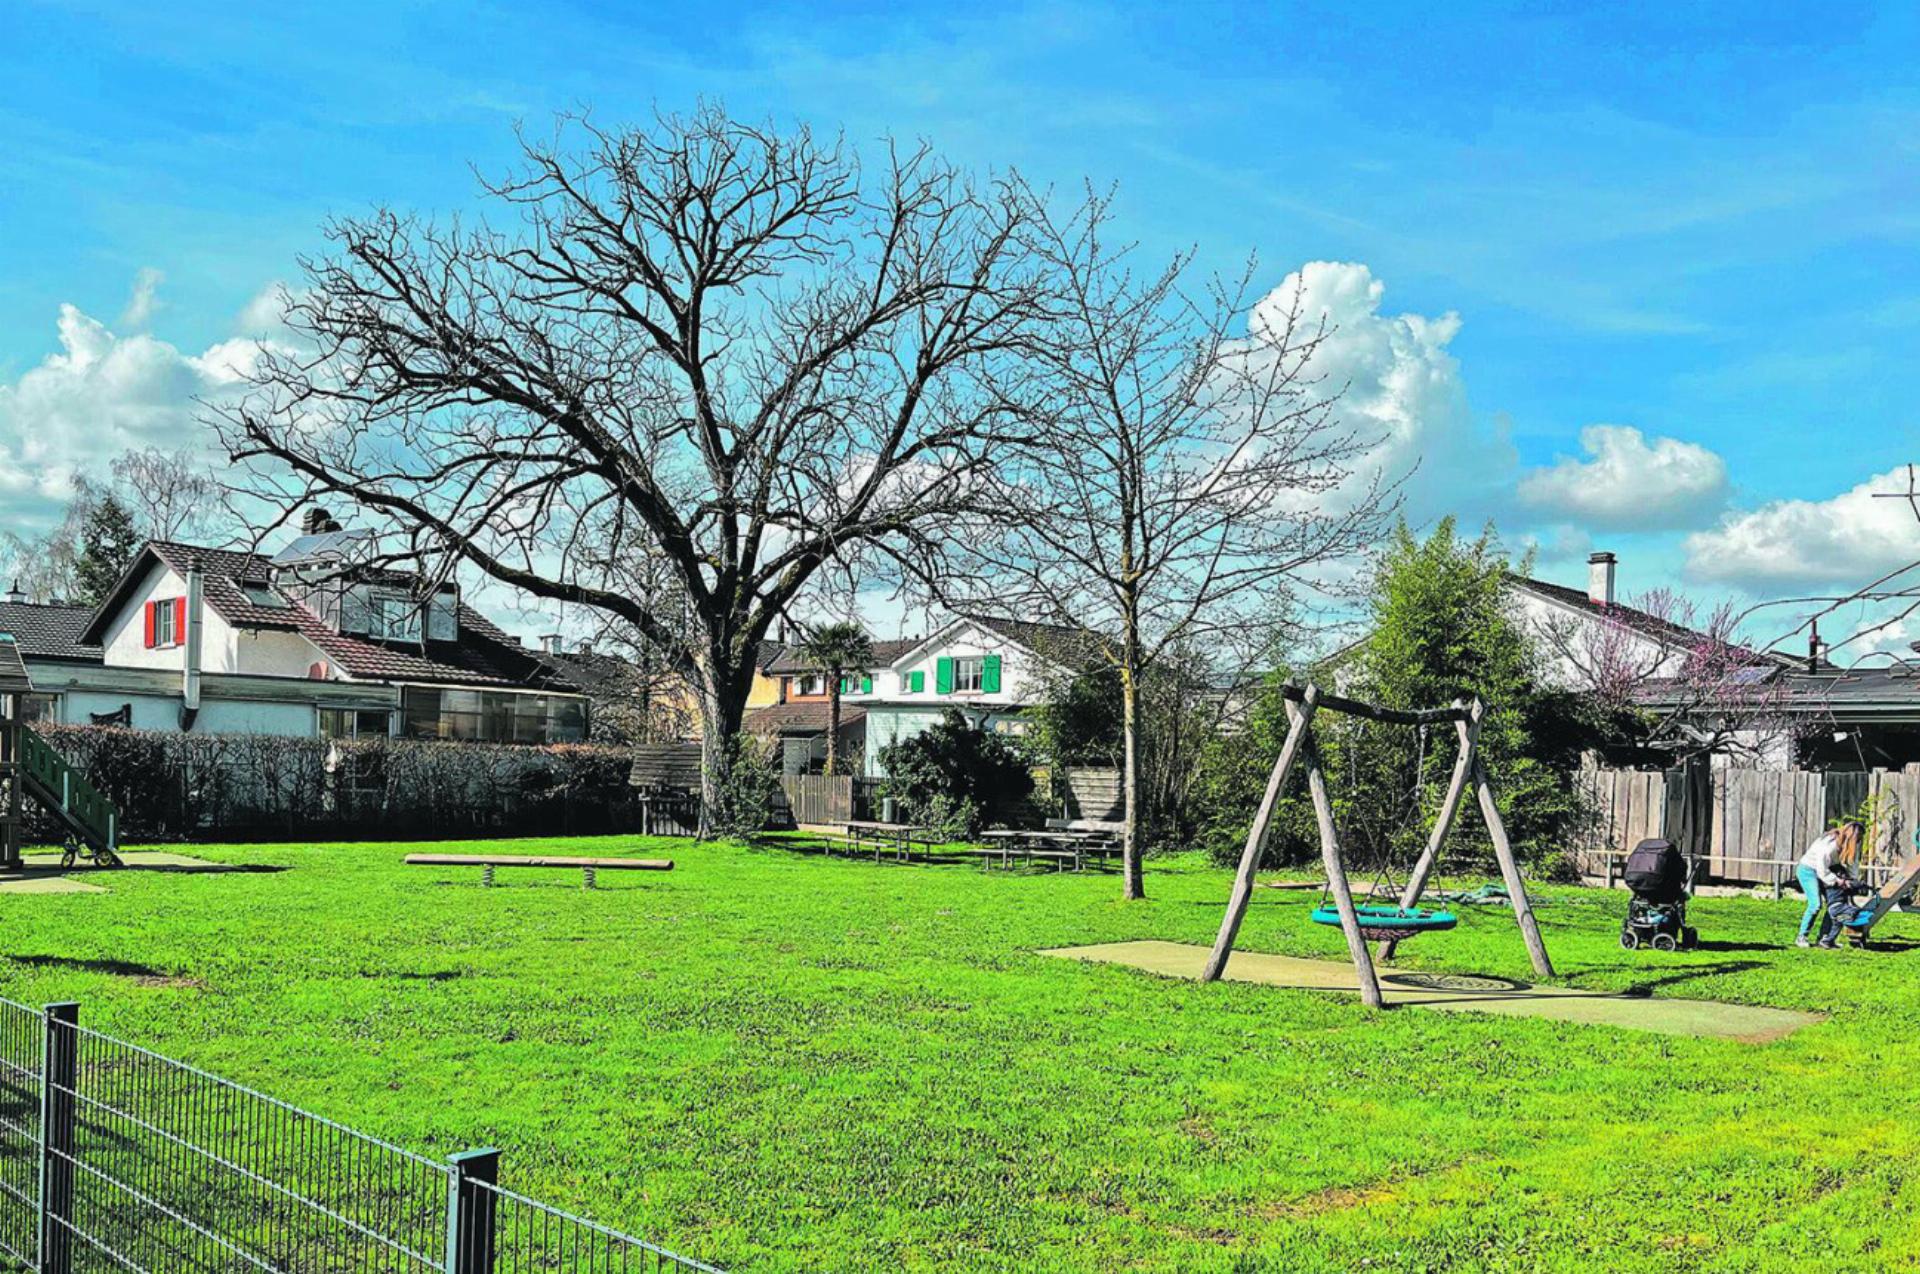 Der Spielplatz Kloos an der Weiherfeldstrasse soll erhalten bleiben – dafür setzen sich Eltern ein. Fotos: Valentin Zumsteg